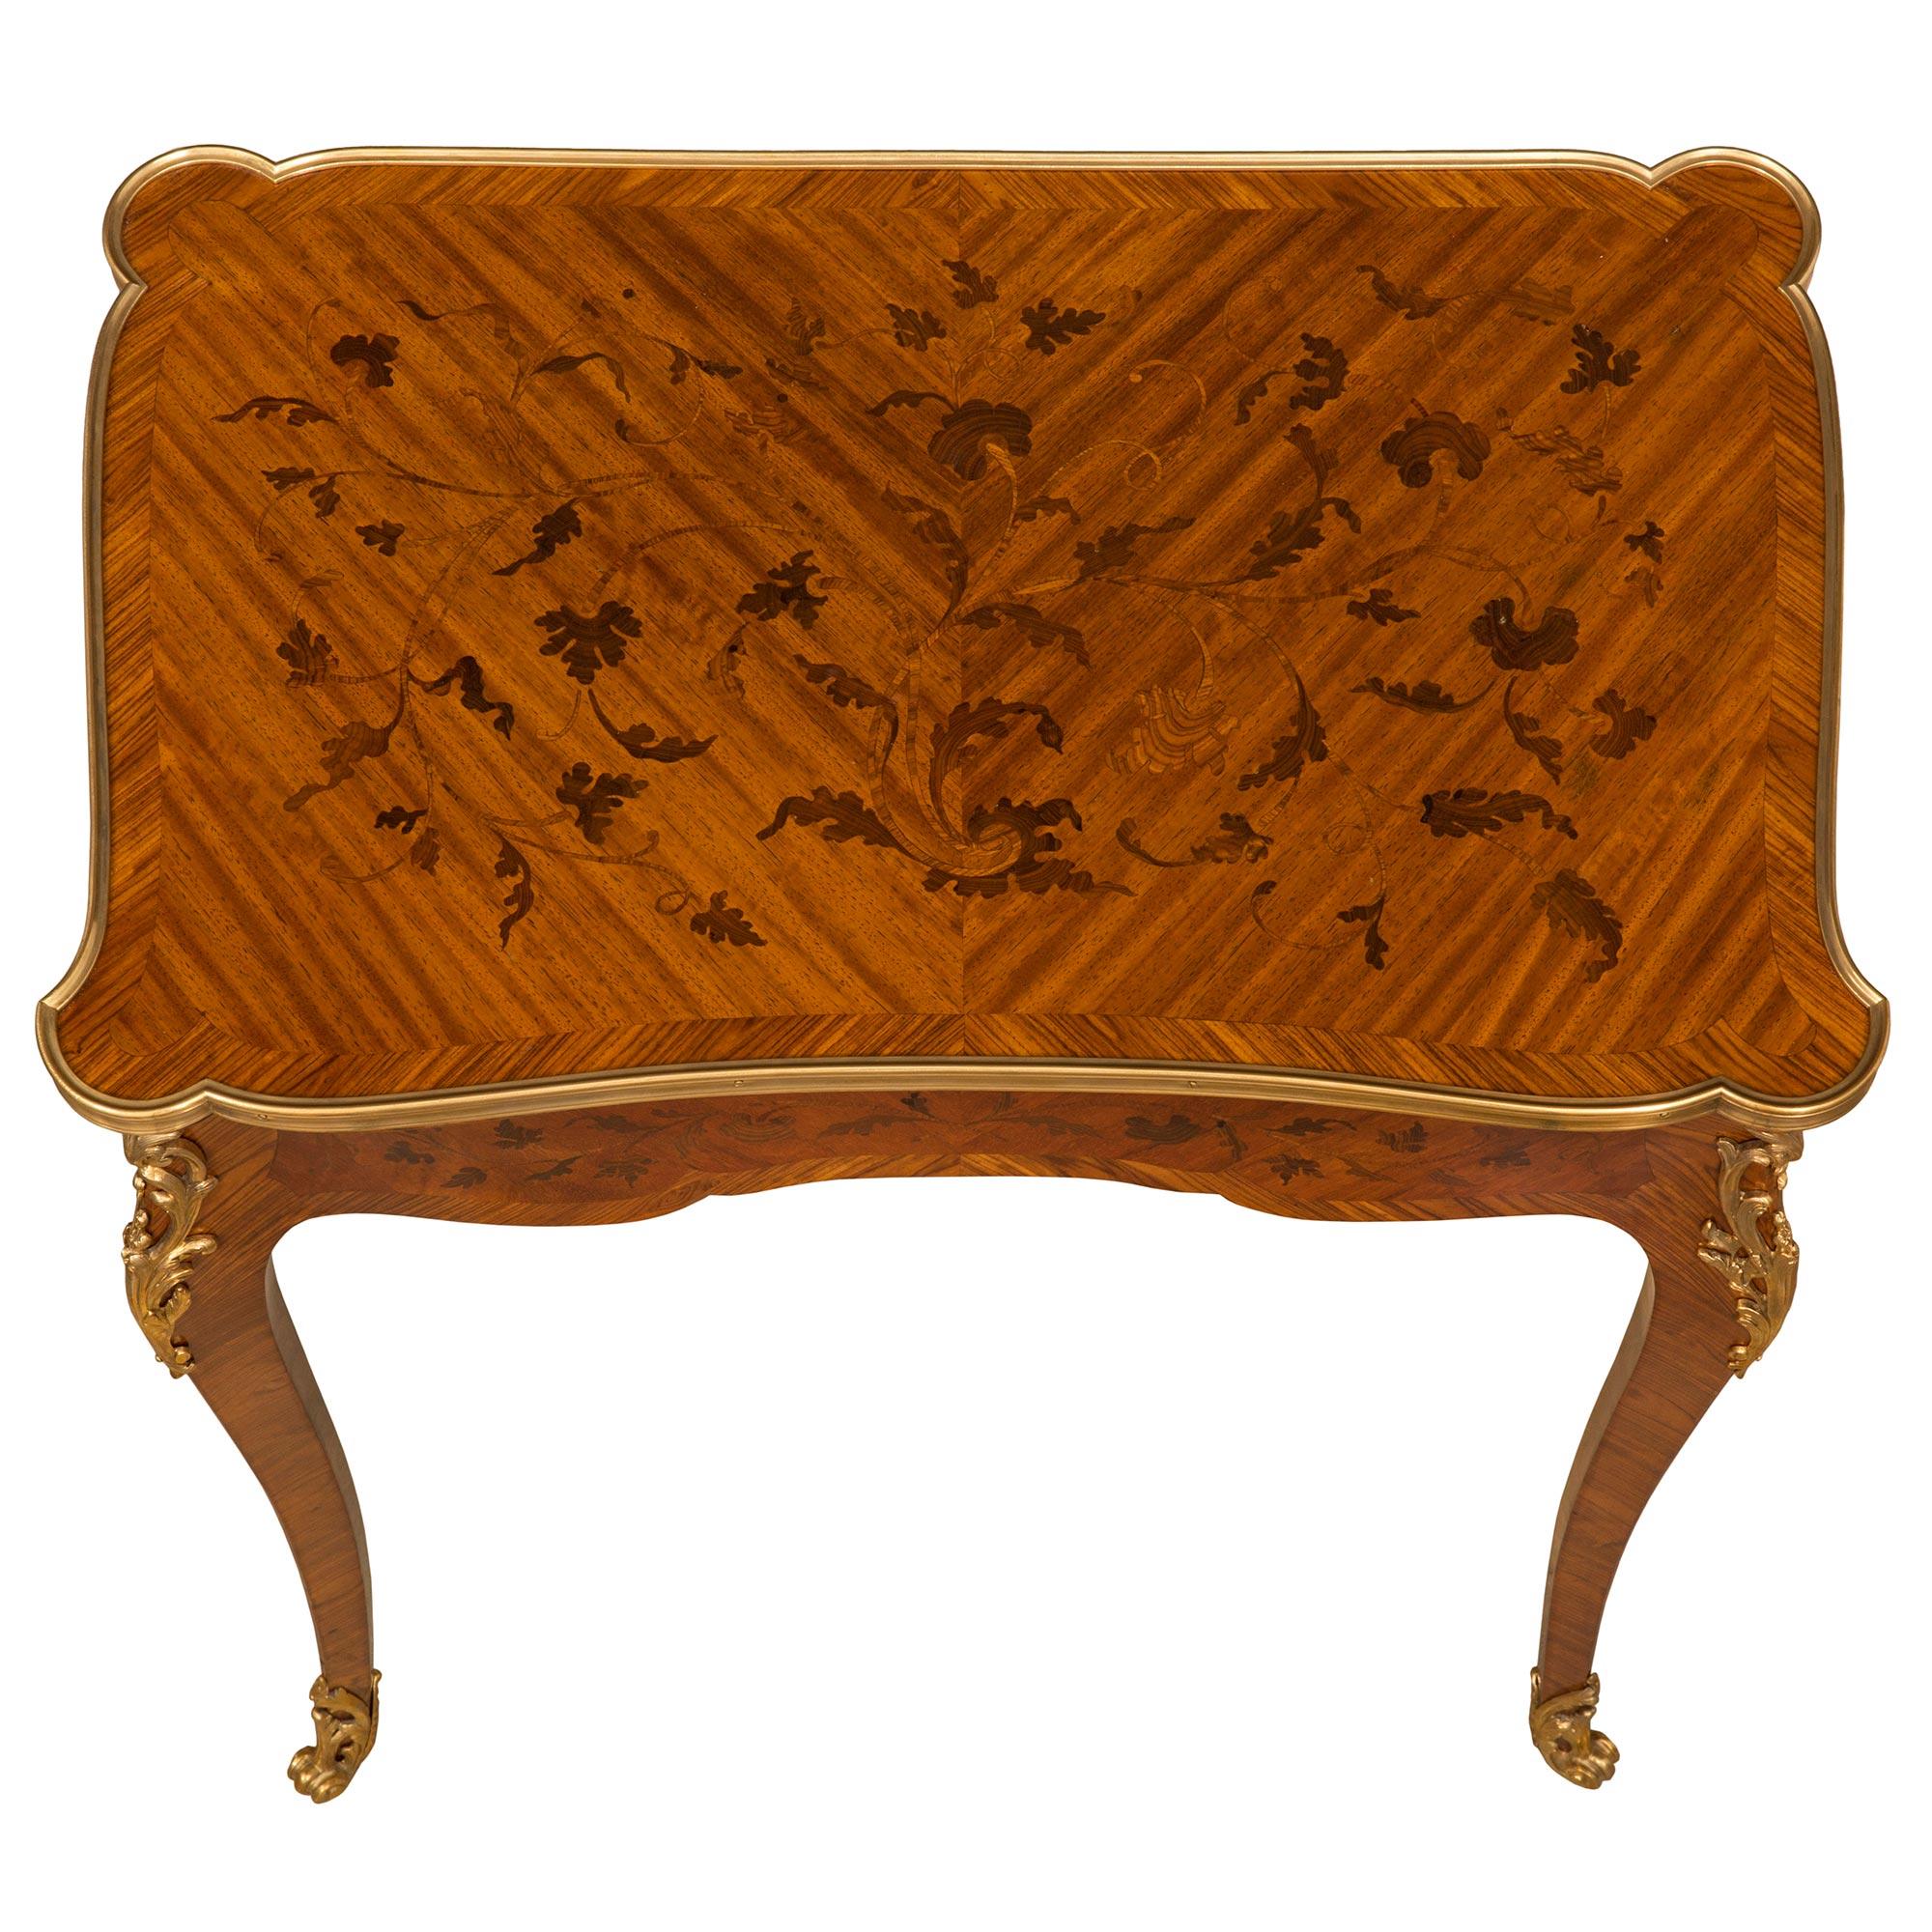 Eine schöne und sehr einzigartige Französisch 19. Jahrhundert Louis XV st. Kingwood, Tulipwood, und Ormolu Flip-Top-Spiele Tisch. Der Tisch ruht auf eleganten, schlanken Cabriole-Beinen mit hochwertigen, durchbrochenen, blattgeschmückten